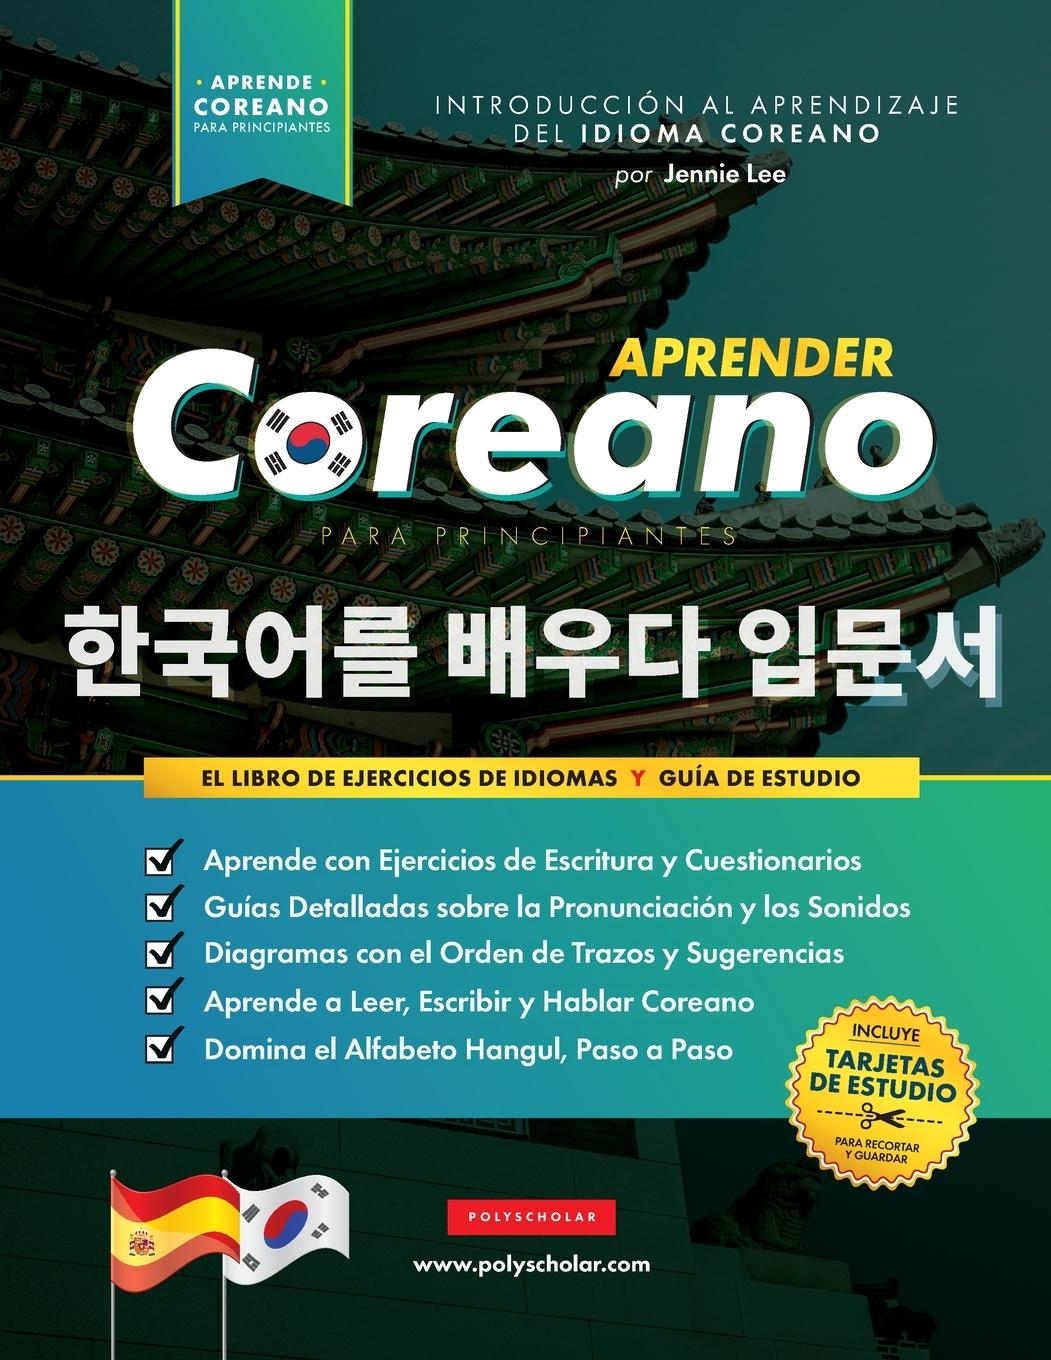 Book Aprender Coreano para Principiantes - El Libro de Ejercicios de Idiomas Polyscholar